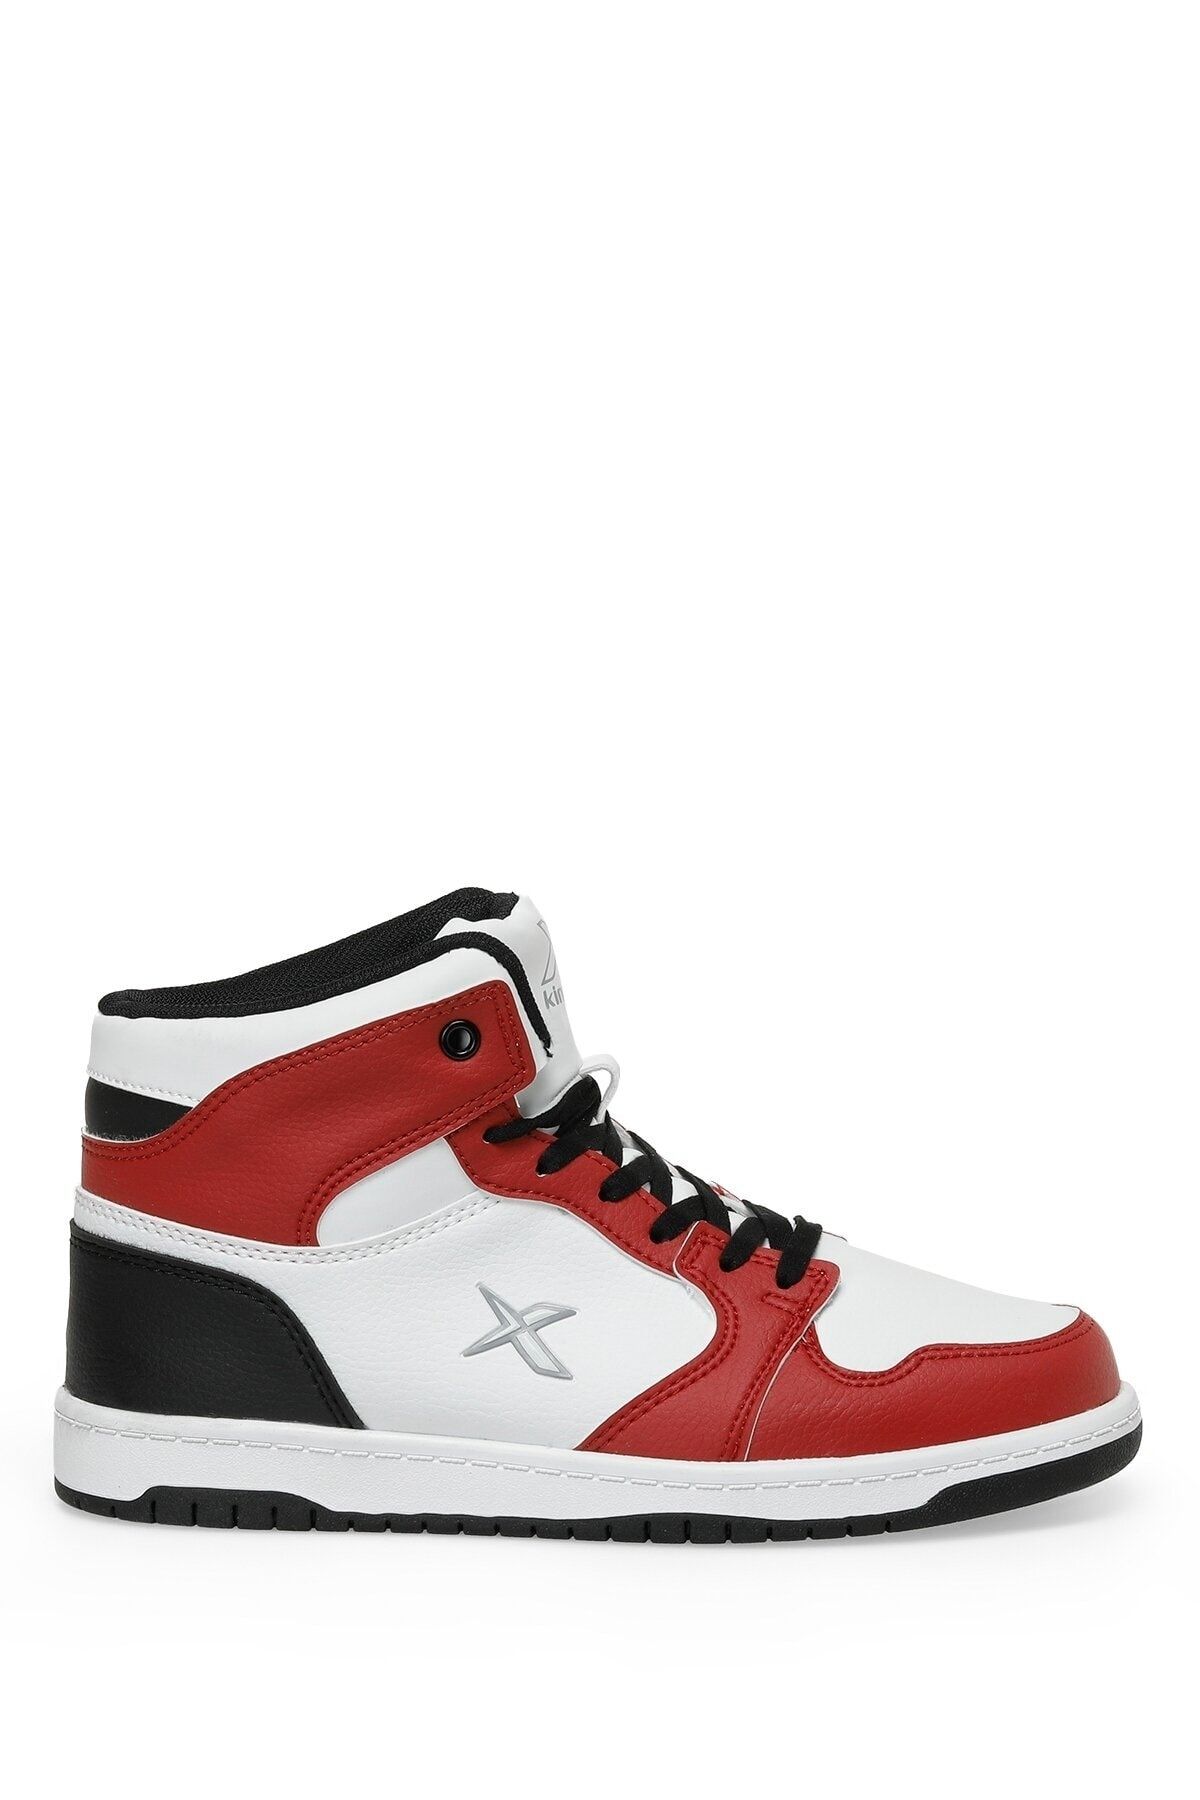 Kinetix Jones Hı Pu 3fx Kırmızı Unisex High Sneaker